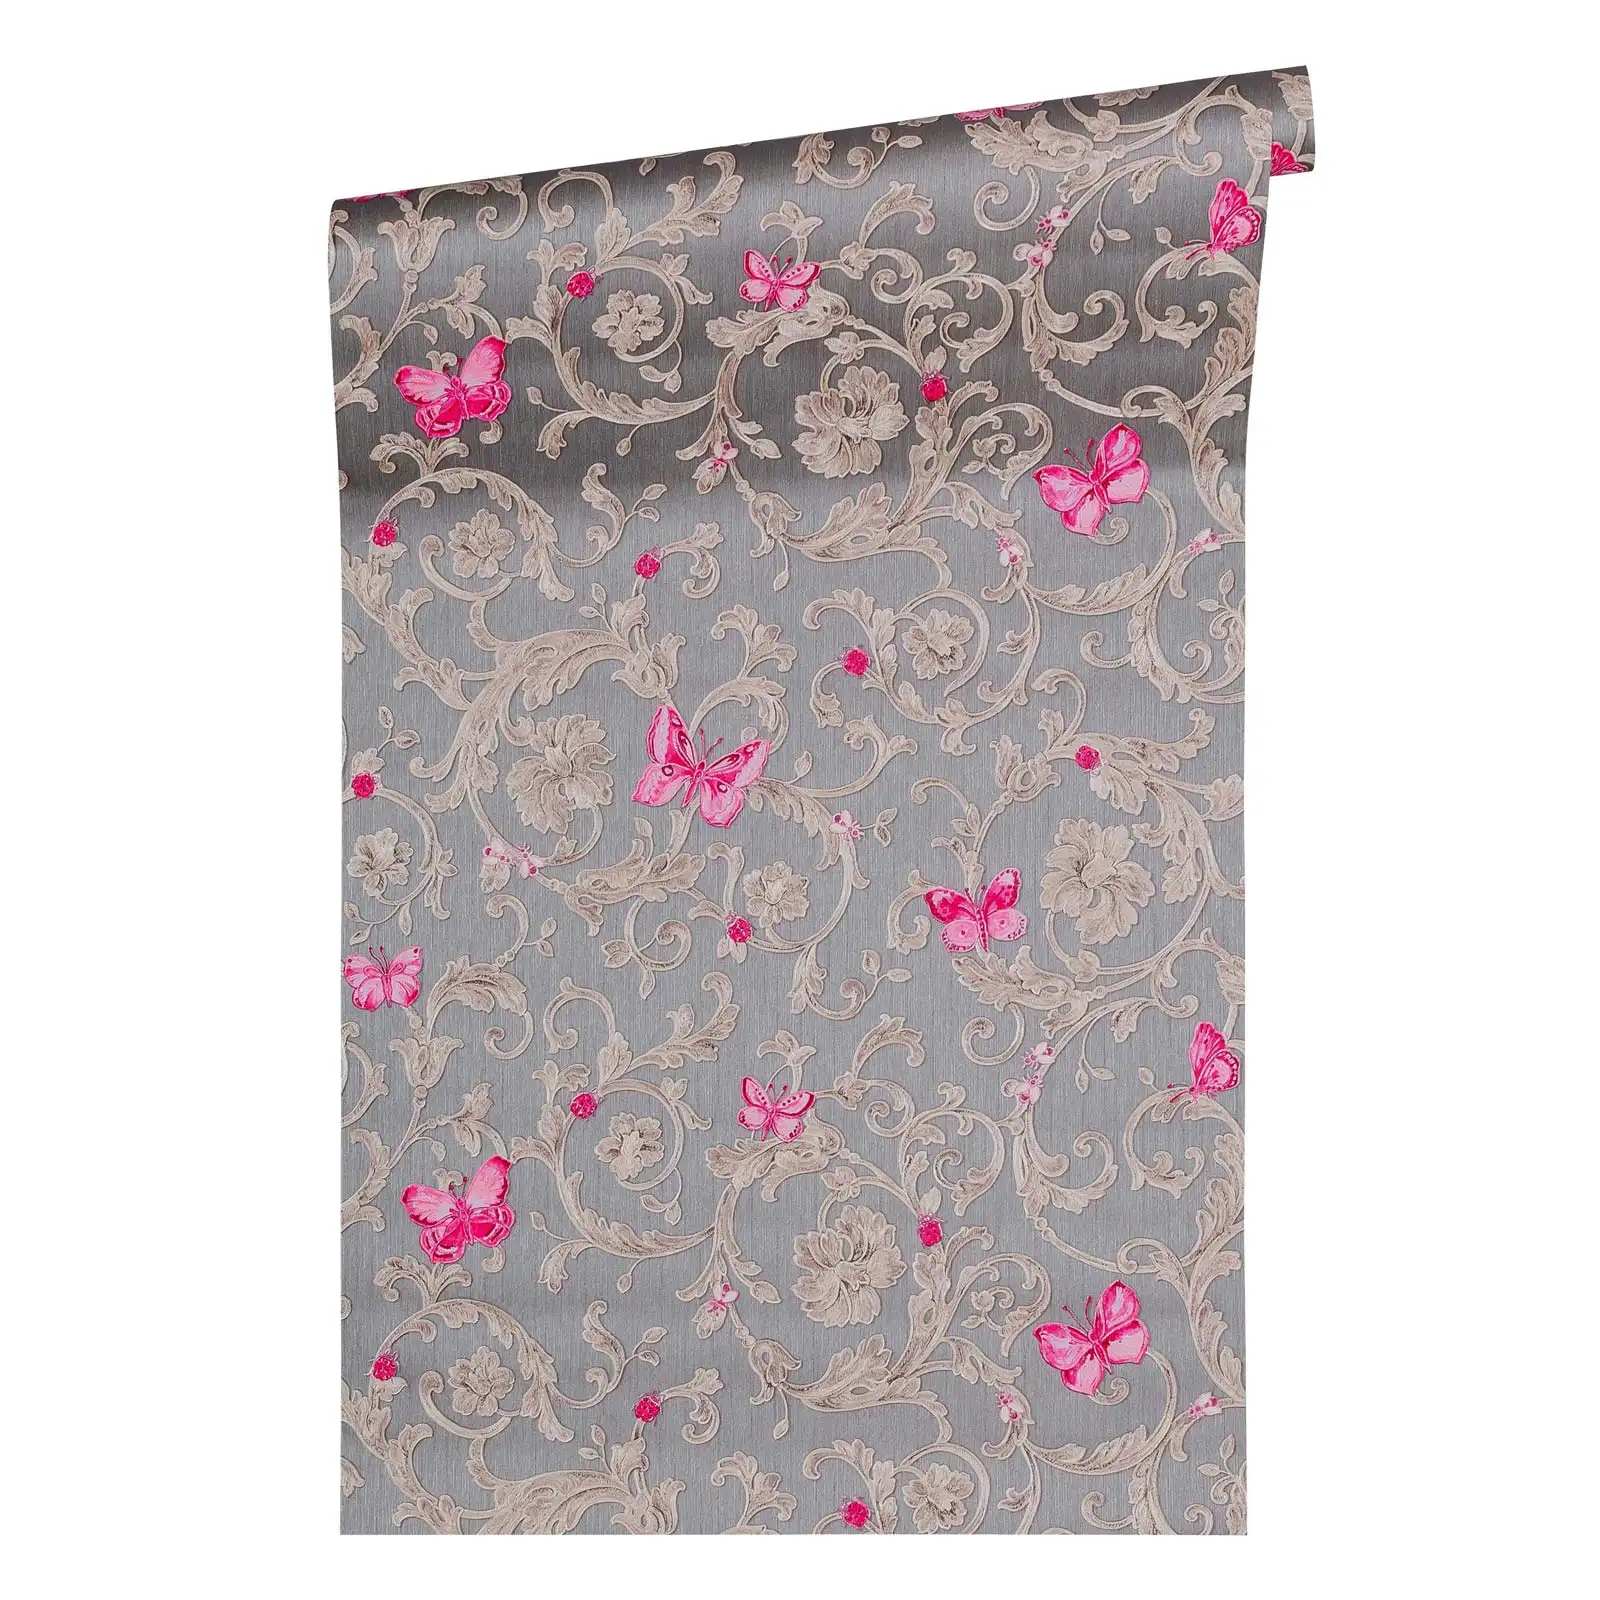 Atacado fabricante cinza e rosa floral wallpaper fácil de furar ideal para salas